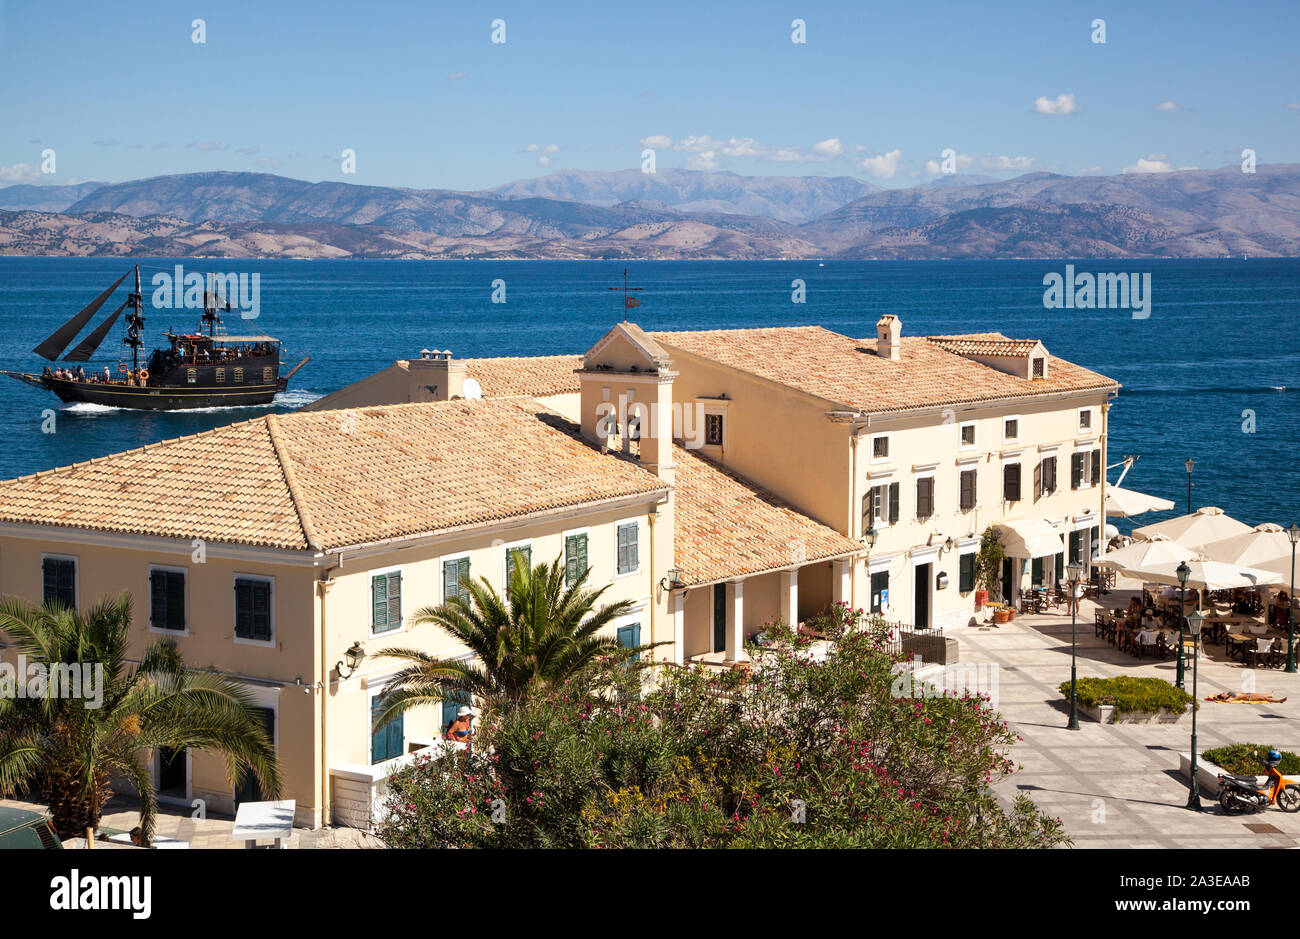 Blick auf eine Taverne und Restaurant am Hafen Hafen von Korfu - Stadt auf der griechischen Insel Korfu Griechenland und Albanien in der Ferne Stockfoto